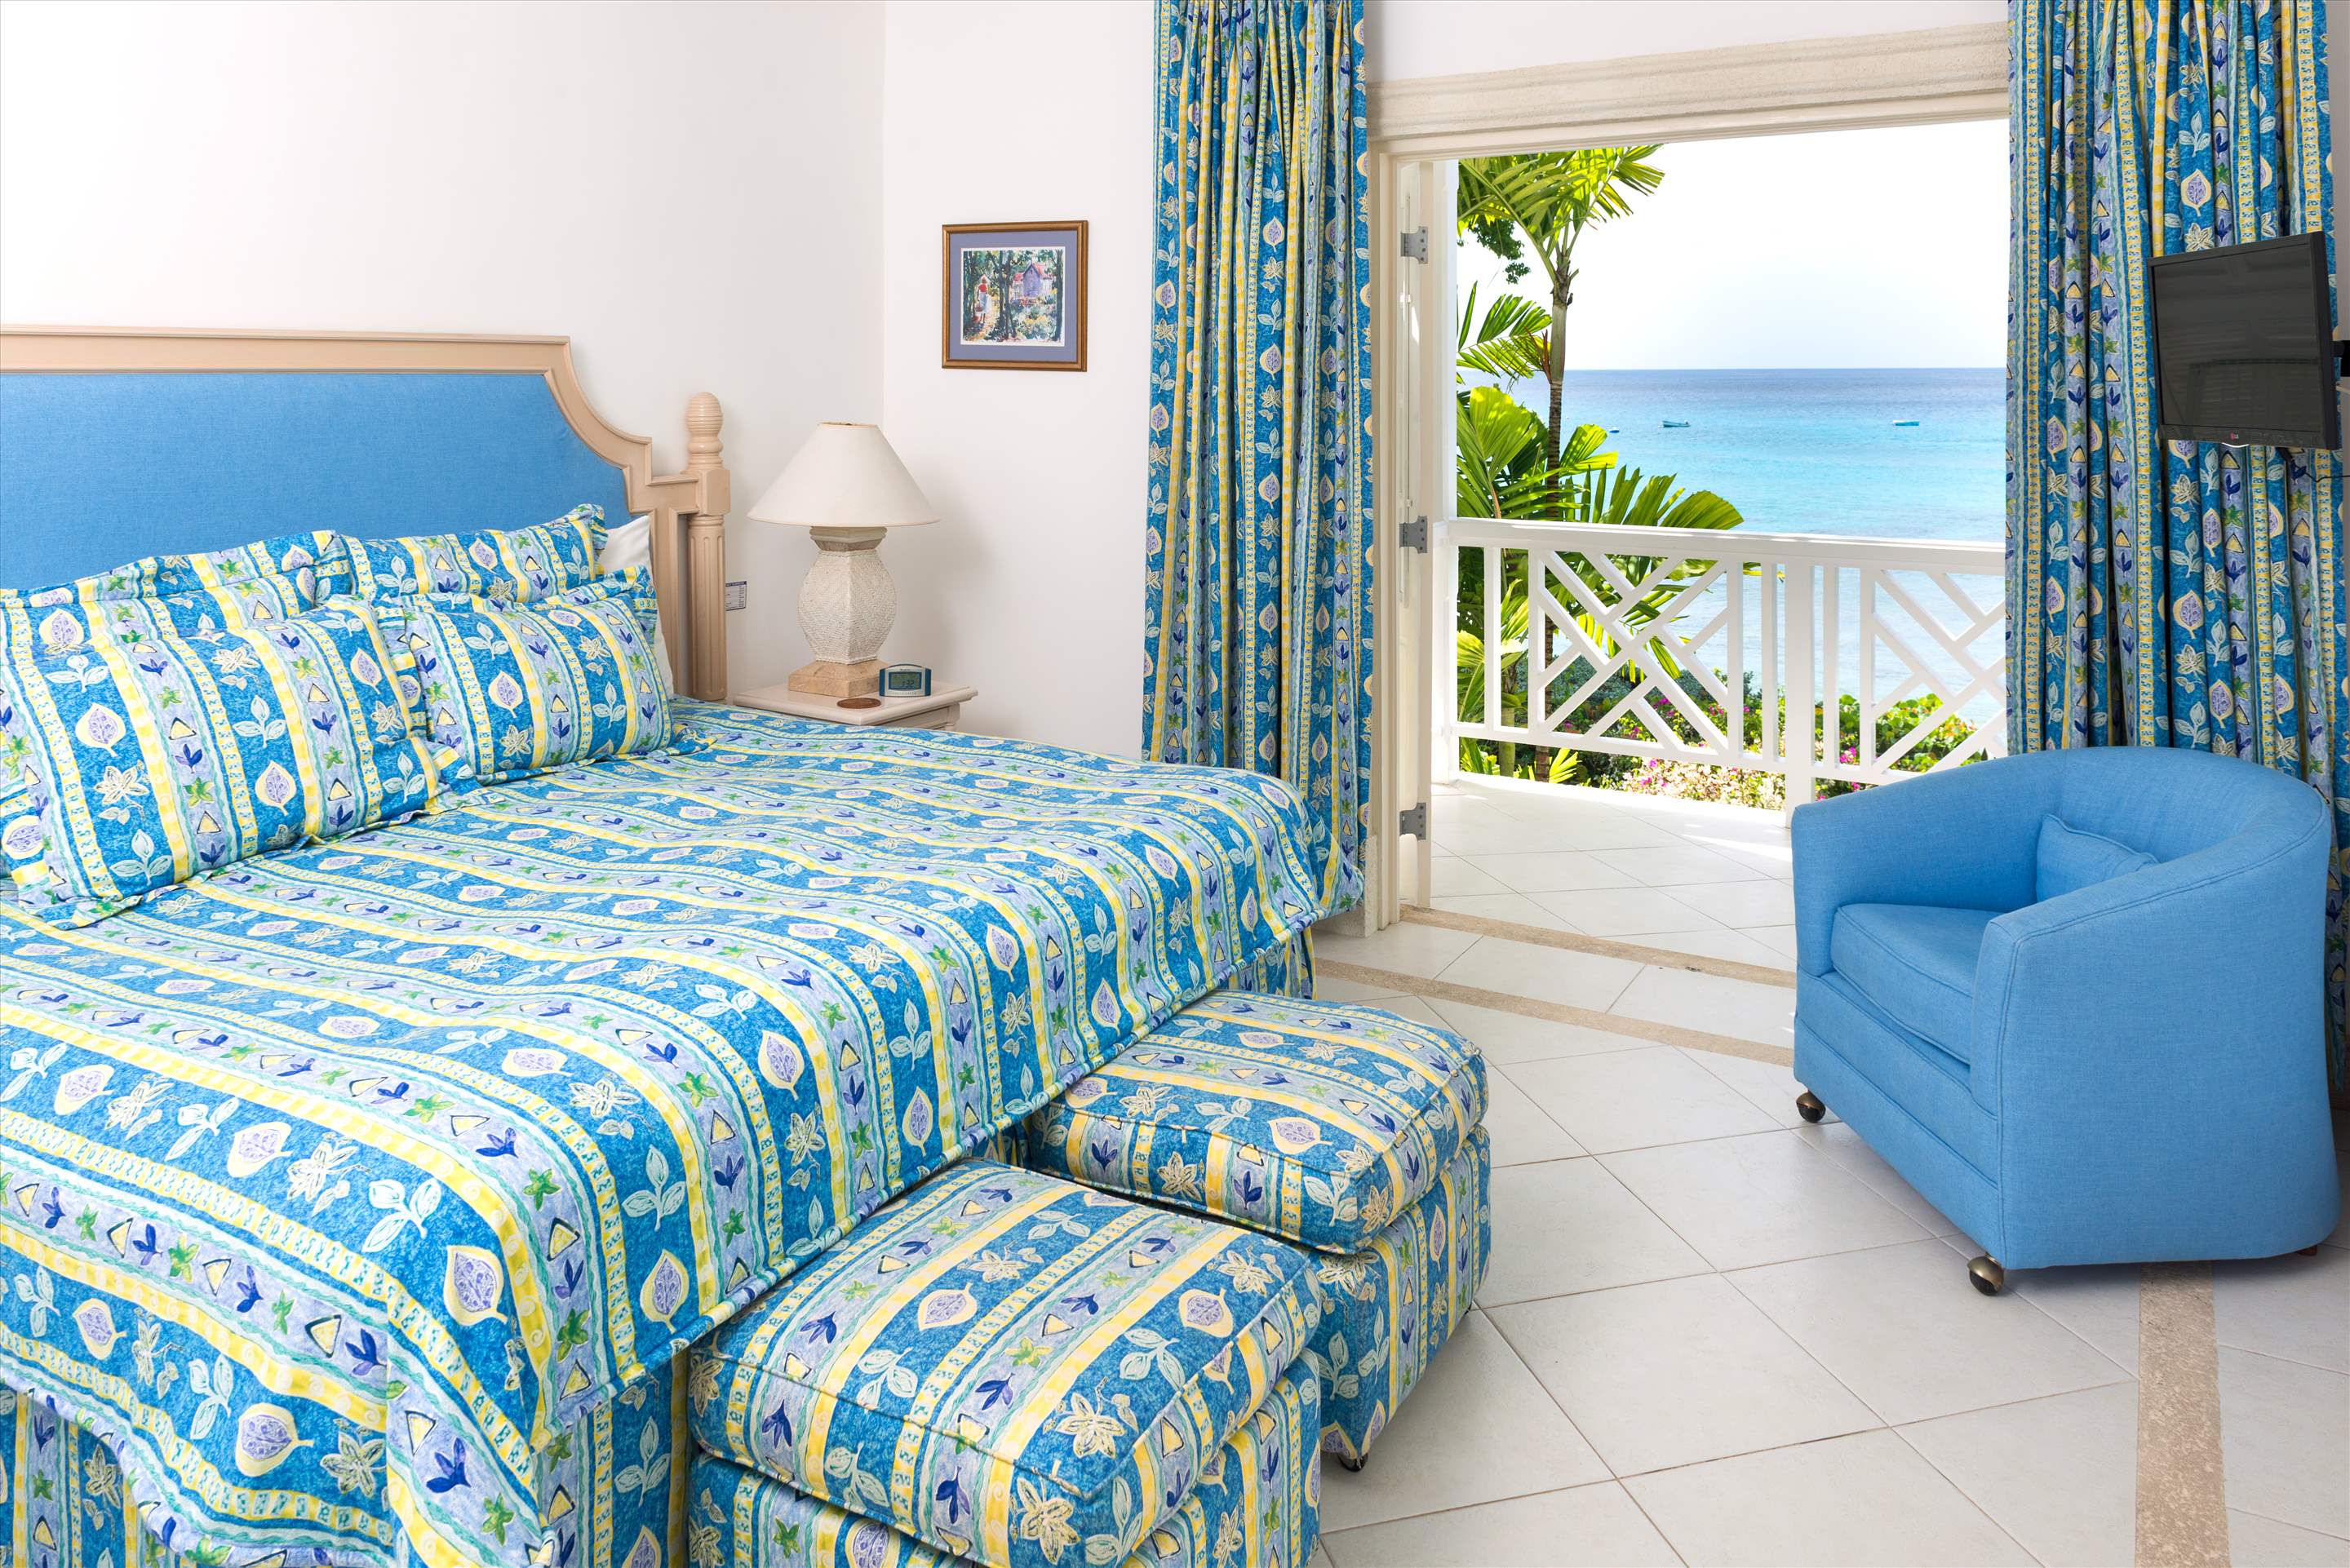 Chanel no.5, 3 bedroom villa in St. James & West Coast, Barbados Photo #16